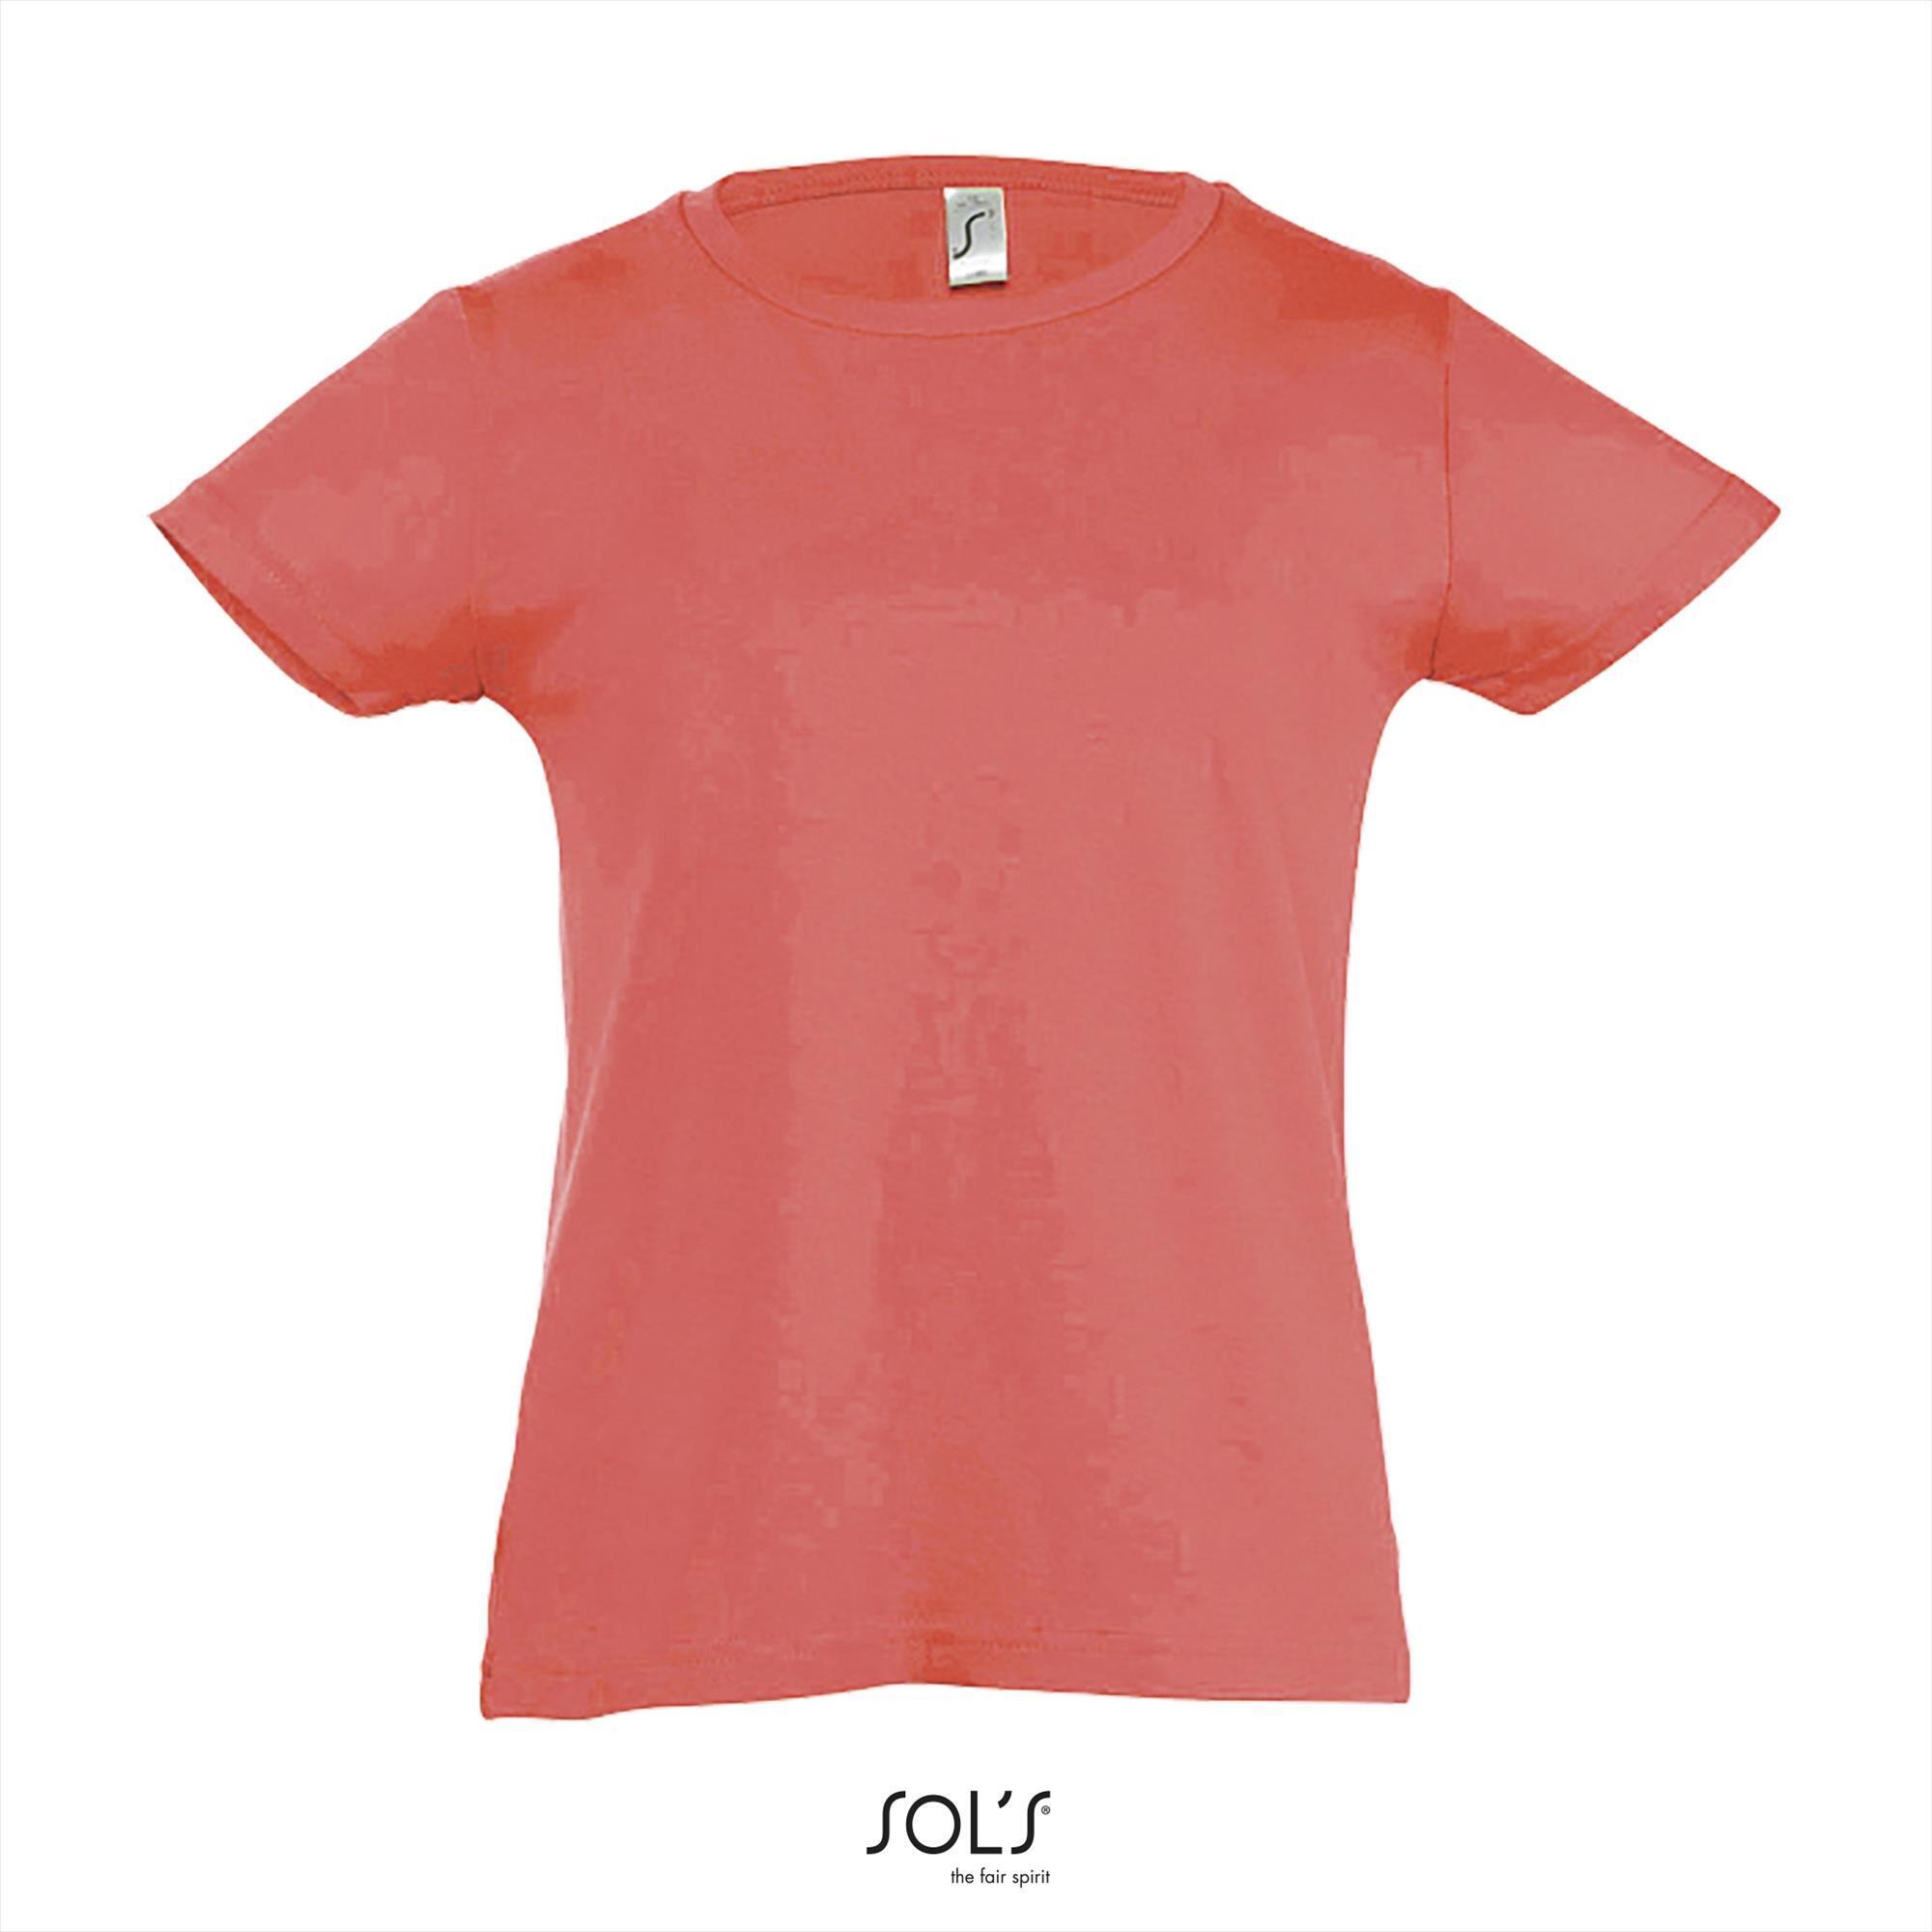 T-shirt voor meisjes koraal rood ronde hals